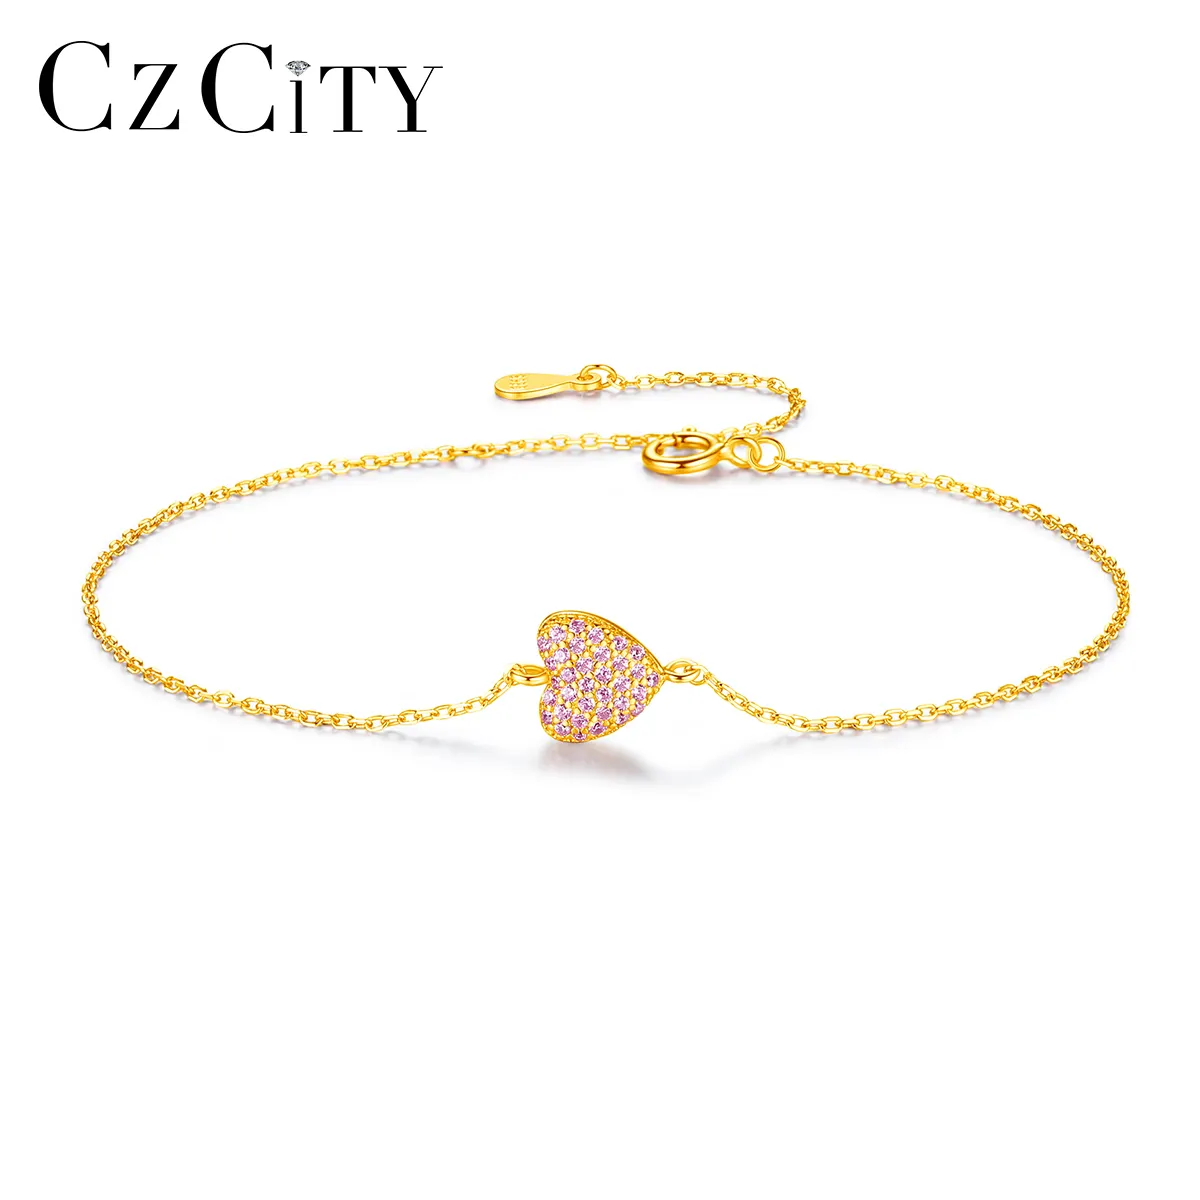 Czcity pulseira de luxo, pulseira banhada a ouro rosa, zircônio cúbico, formato de coração